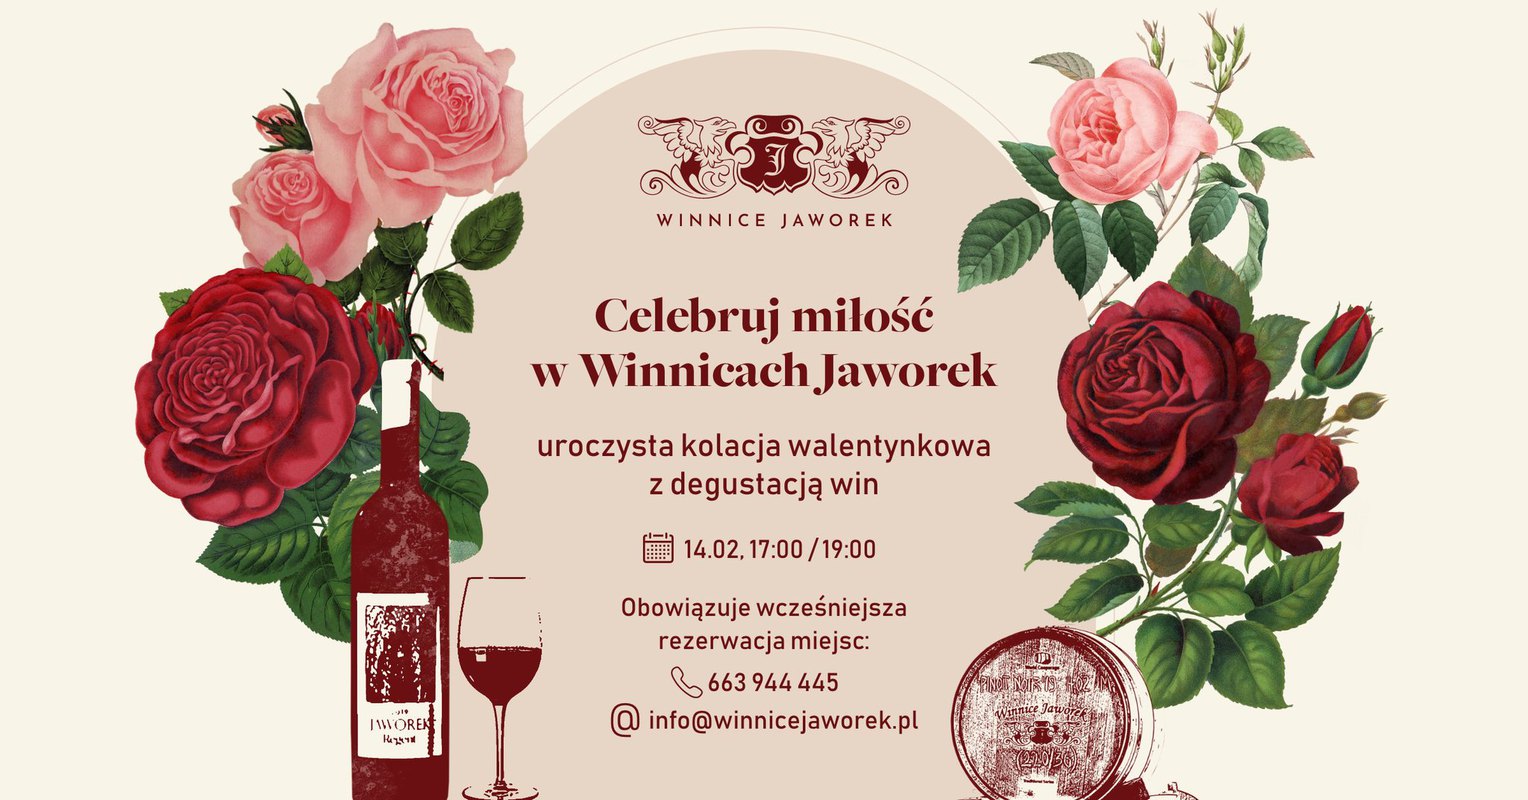 Celebruj miłość · kolacja walentynkowa i degustacja win w Winnicach Jaworek · 14.02, 17:00 lub 19:00